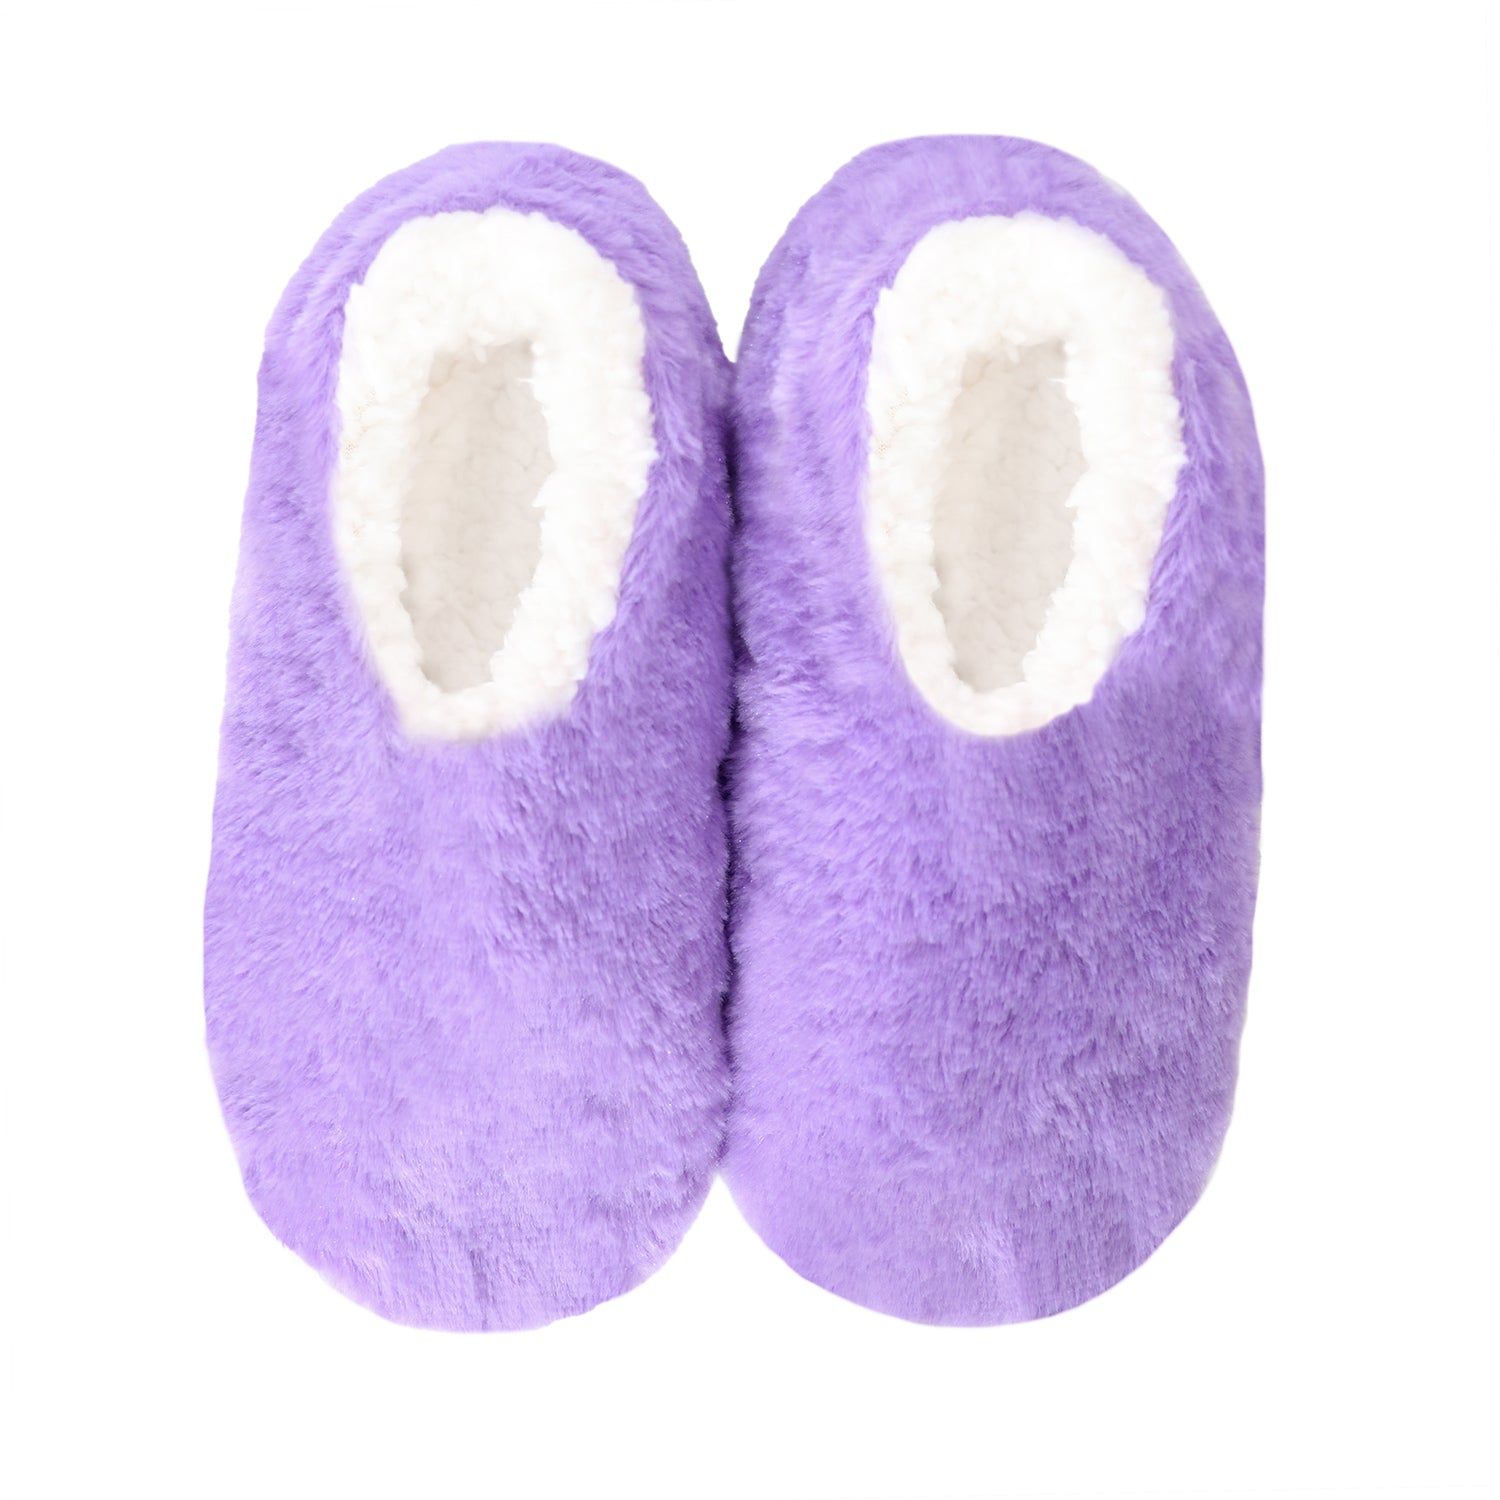 Splosh - SnuggUps Women's Brights Purple